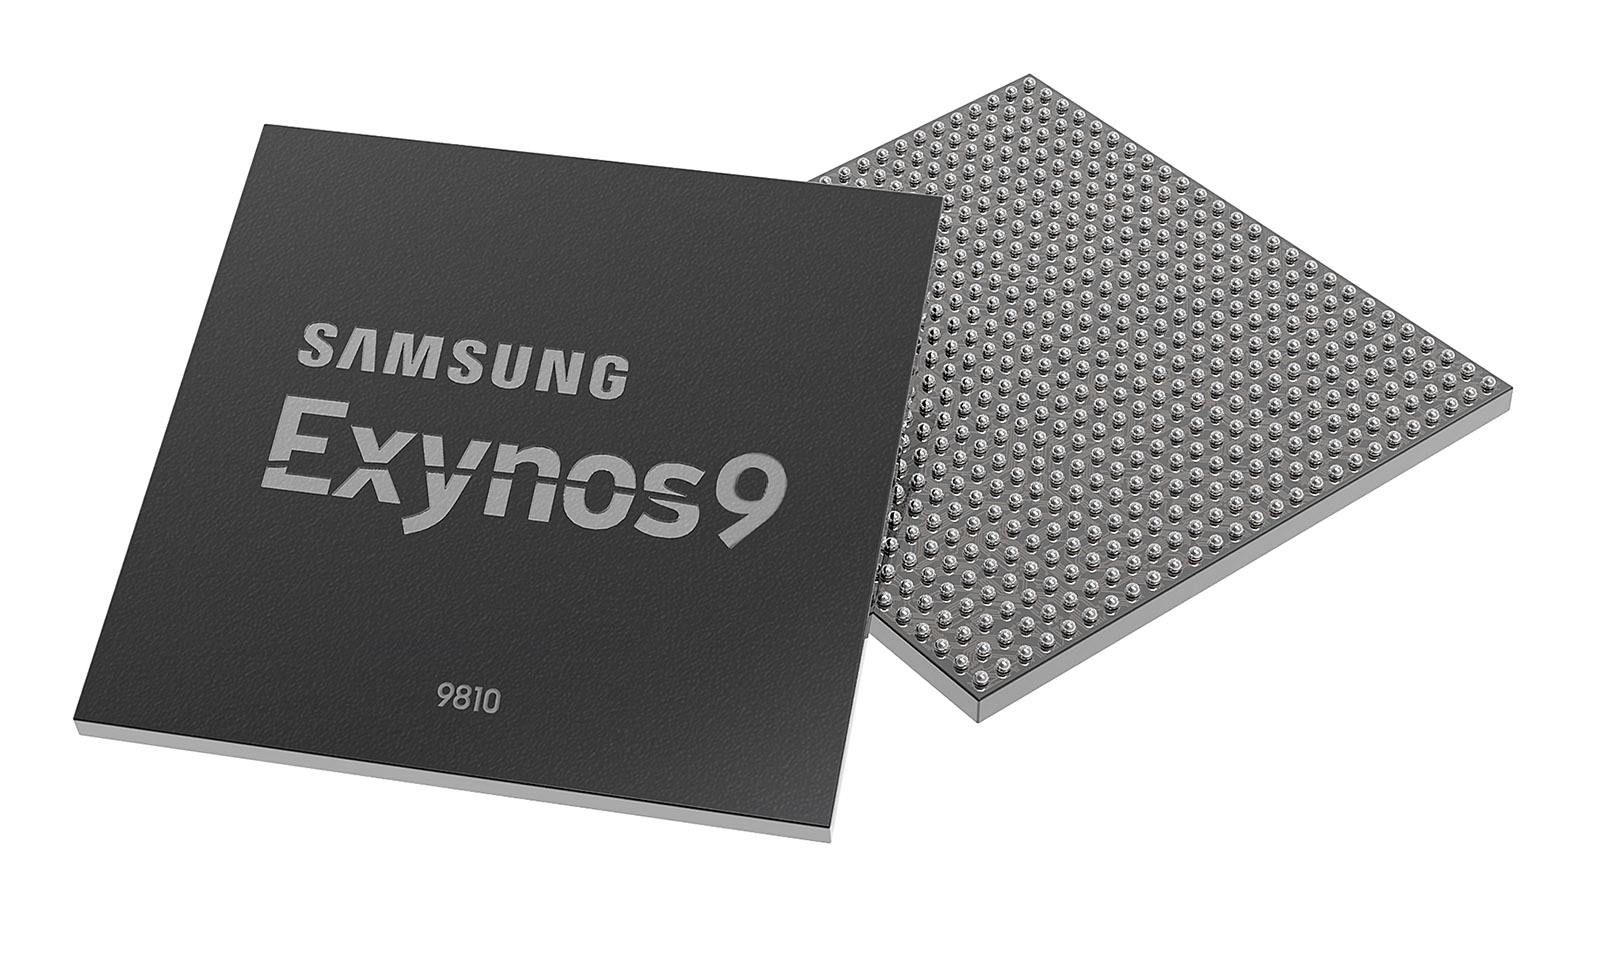 Thế hệ chip kế tiếp của Samsung sẽ hướng đến hệ thống nhận diện khuôn mặt trên Galaxy S9